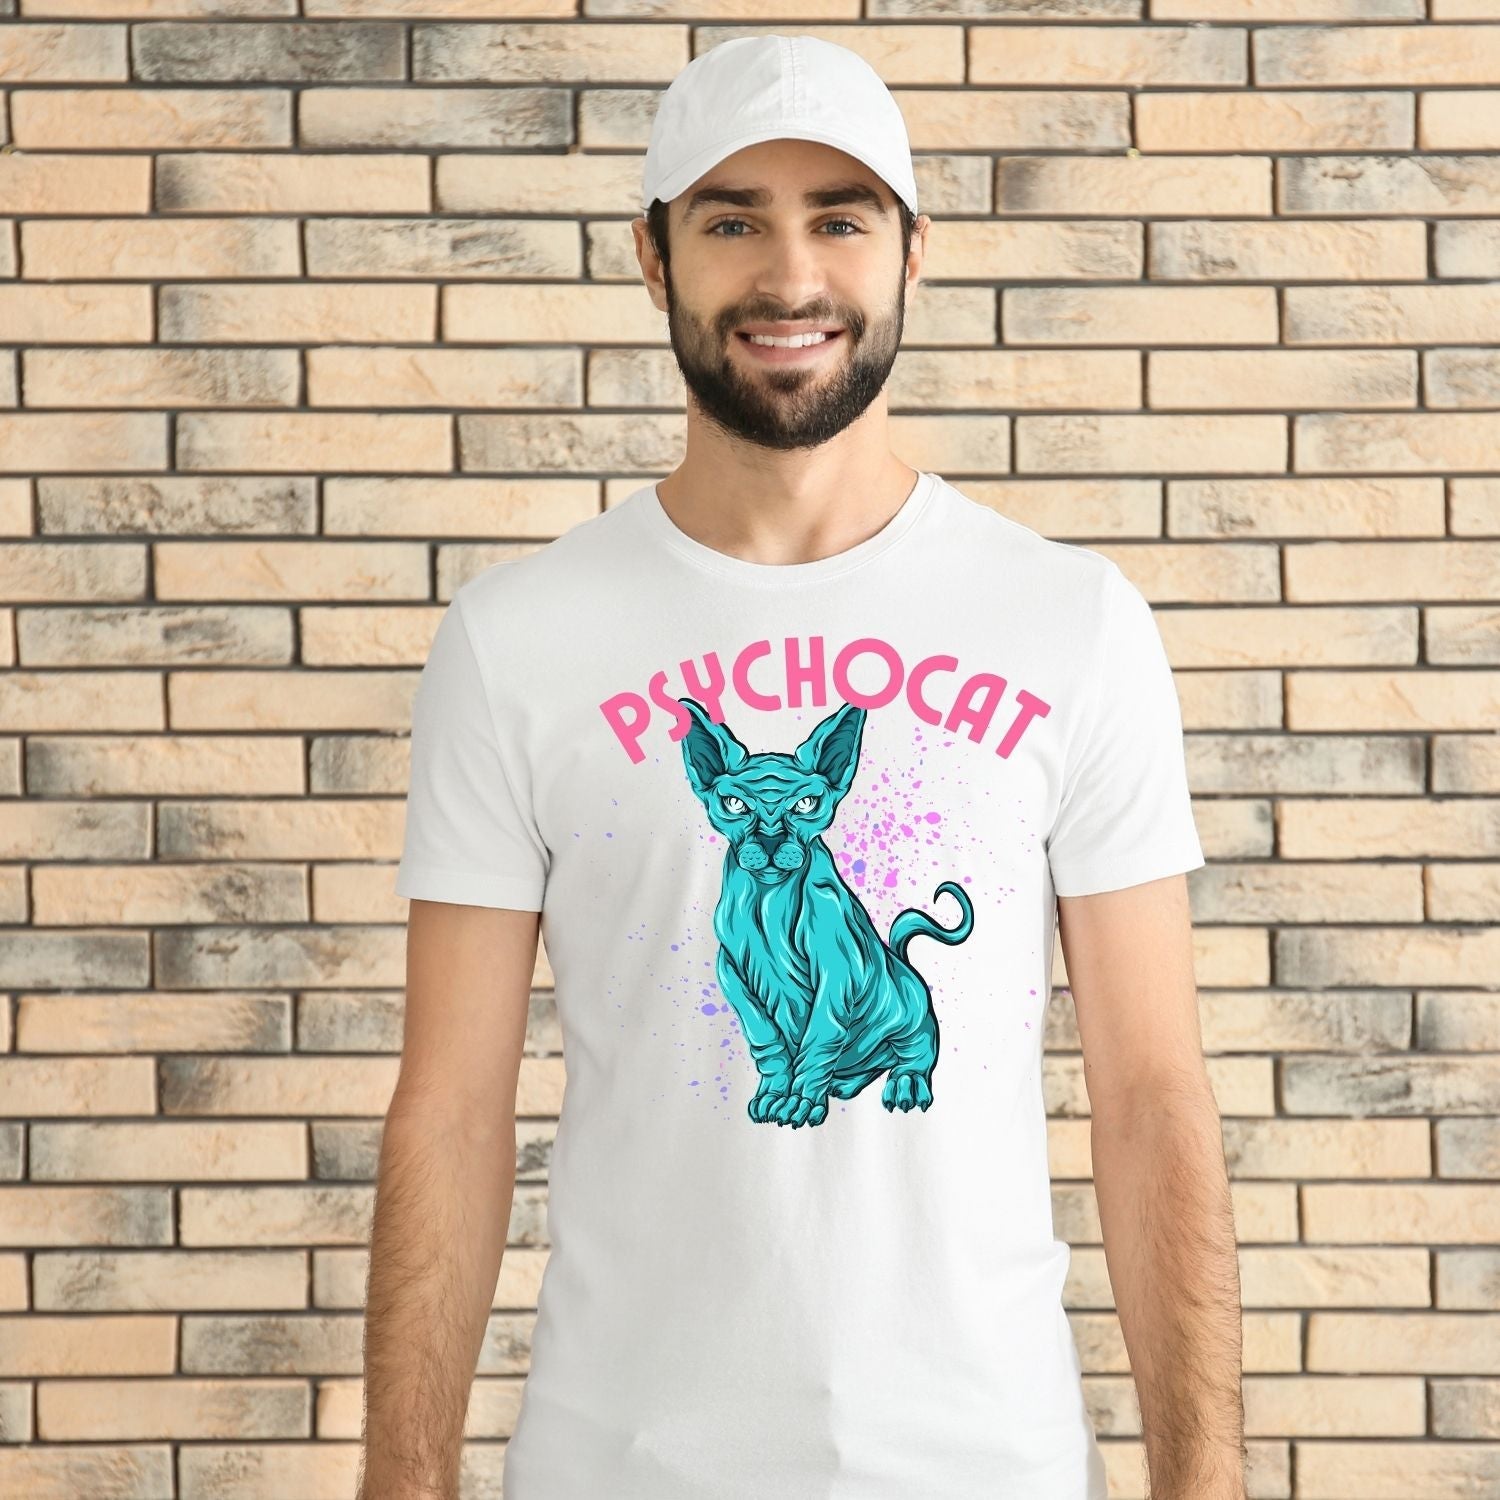 Tricou "pschyocat" - Cadouri Personalizate